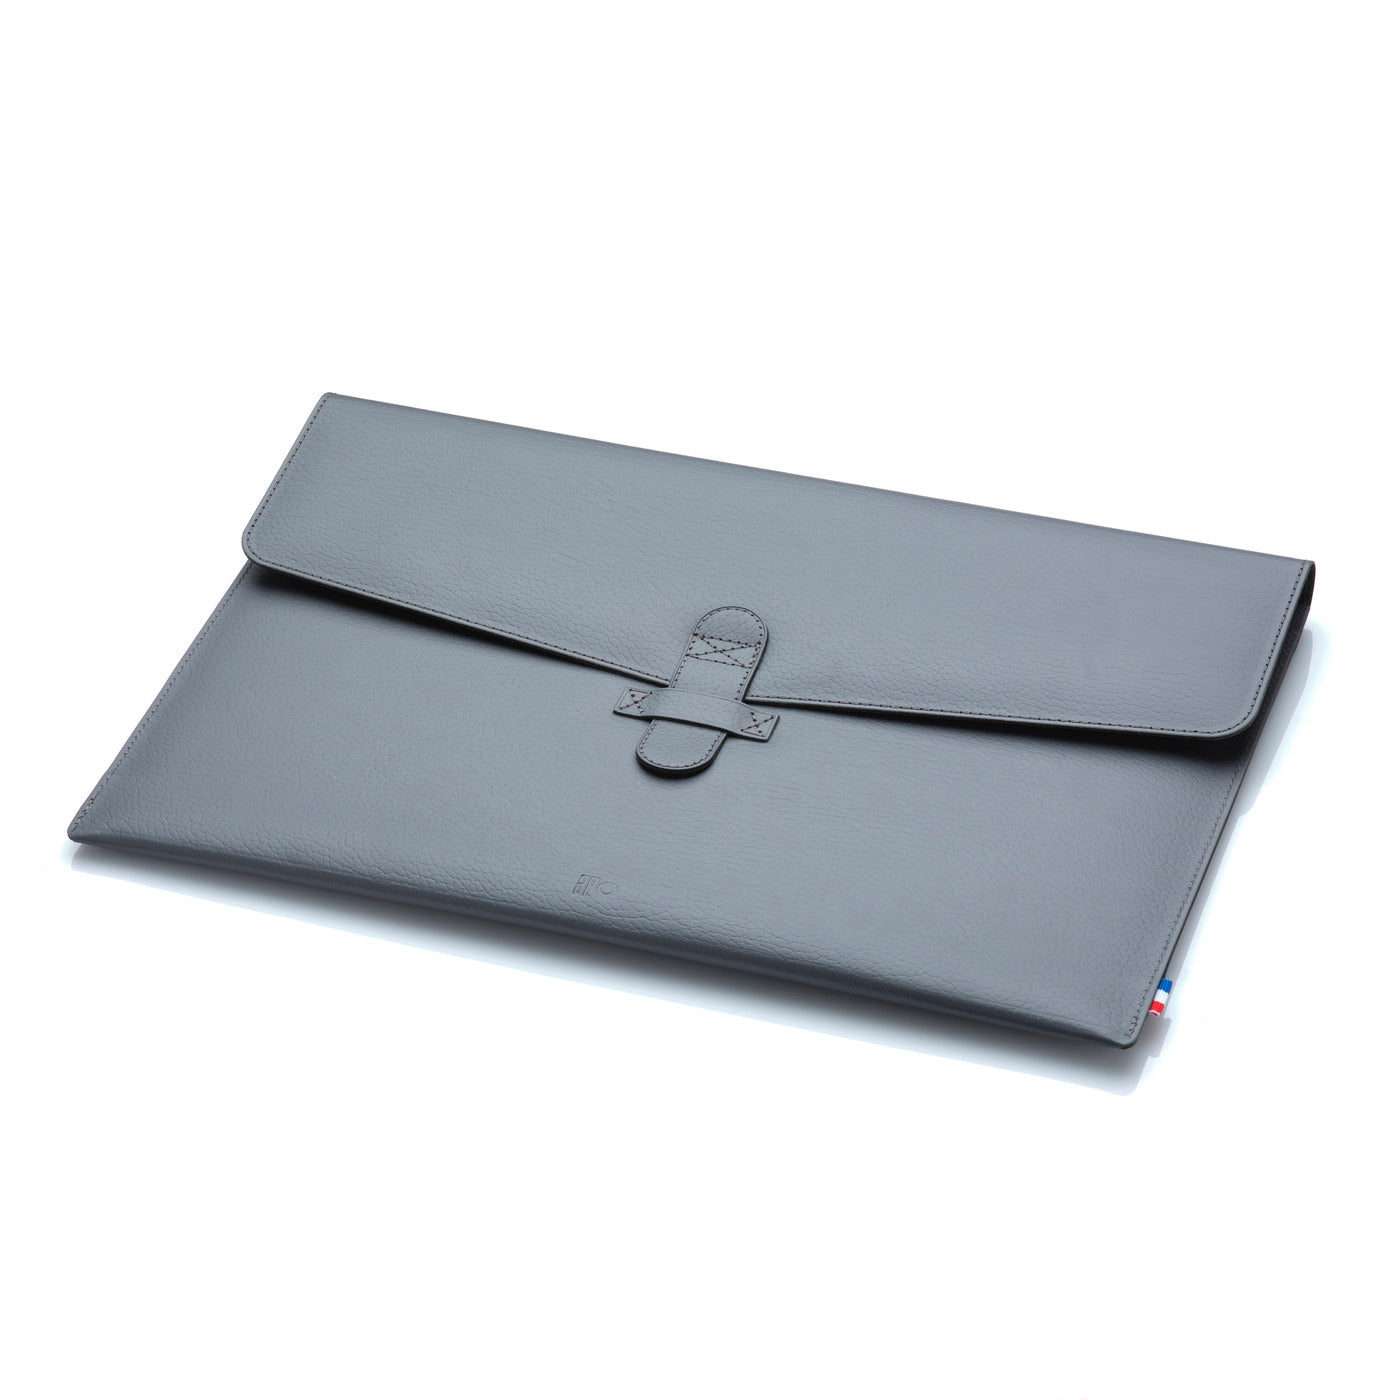 NAT - Housse MacBook Pro 13 / Air 13 en cuir recyclé - Gris